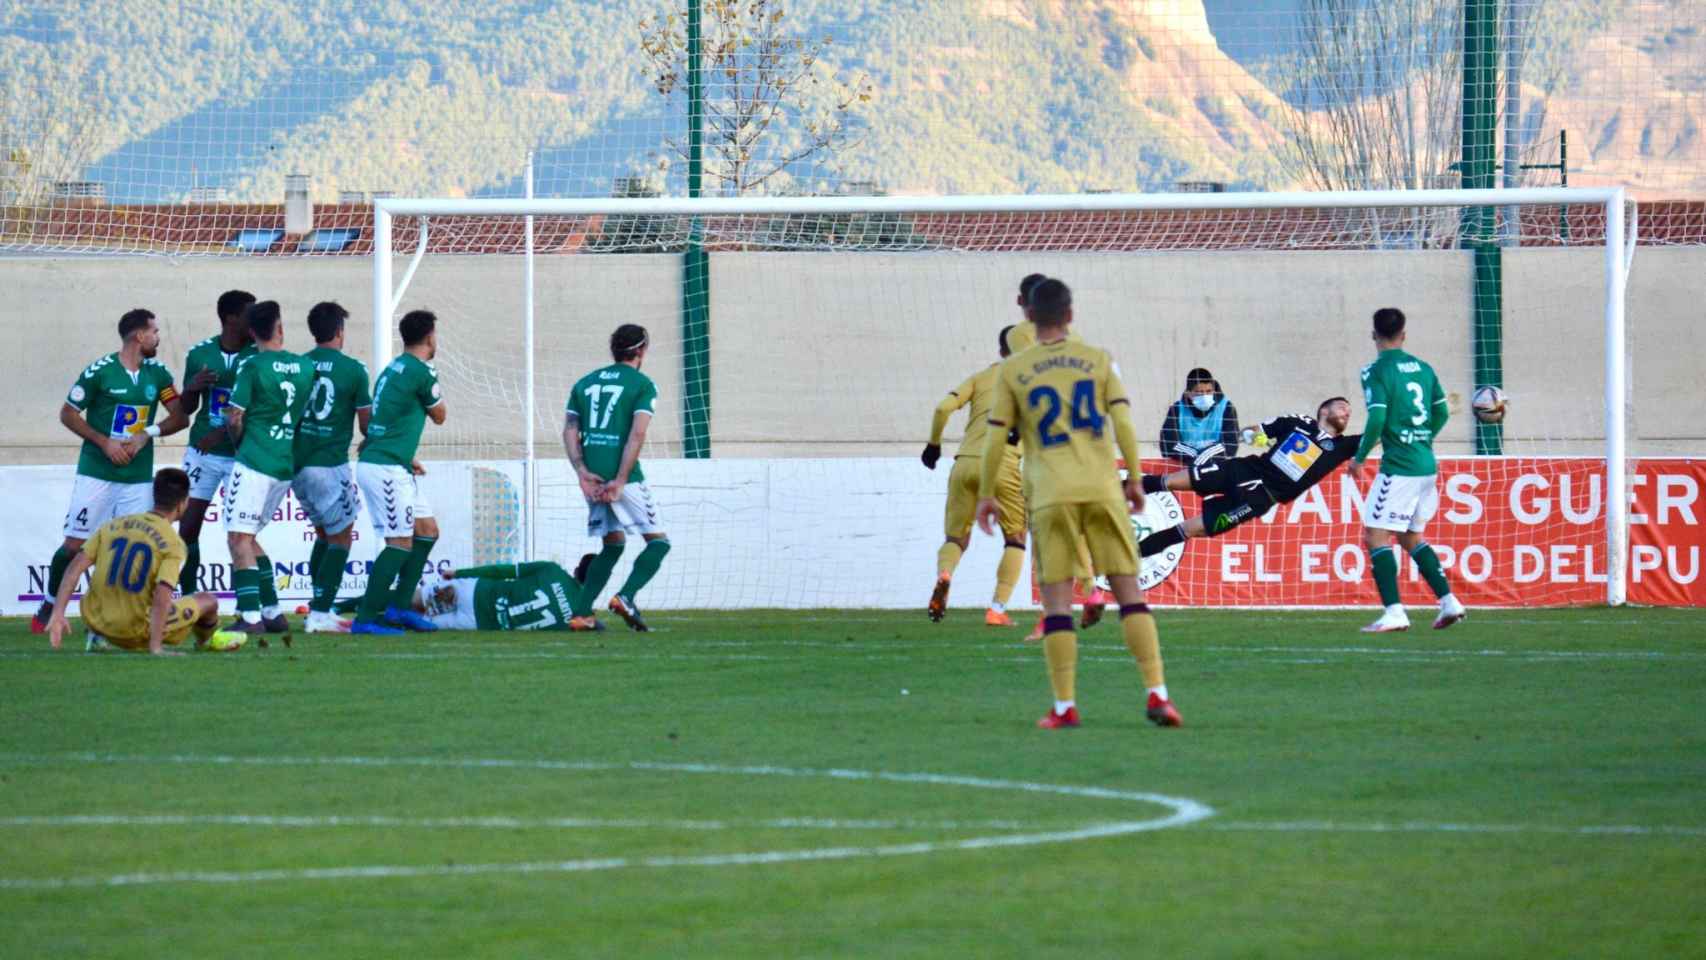 Instante en el que Sevikyan hacía el segundo gol del Atlético Levante. Foto: CD Marchamalo